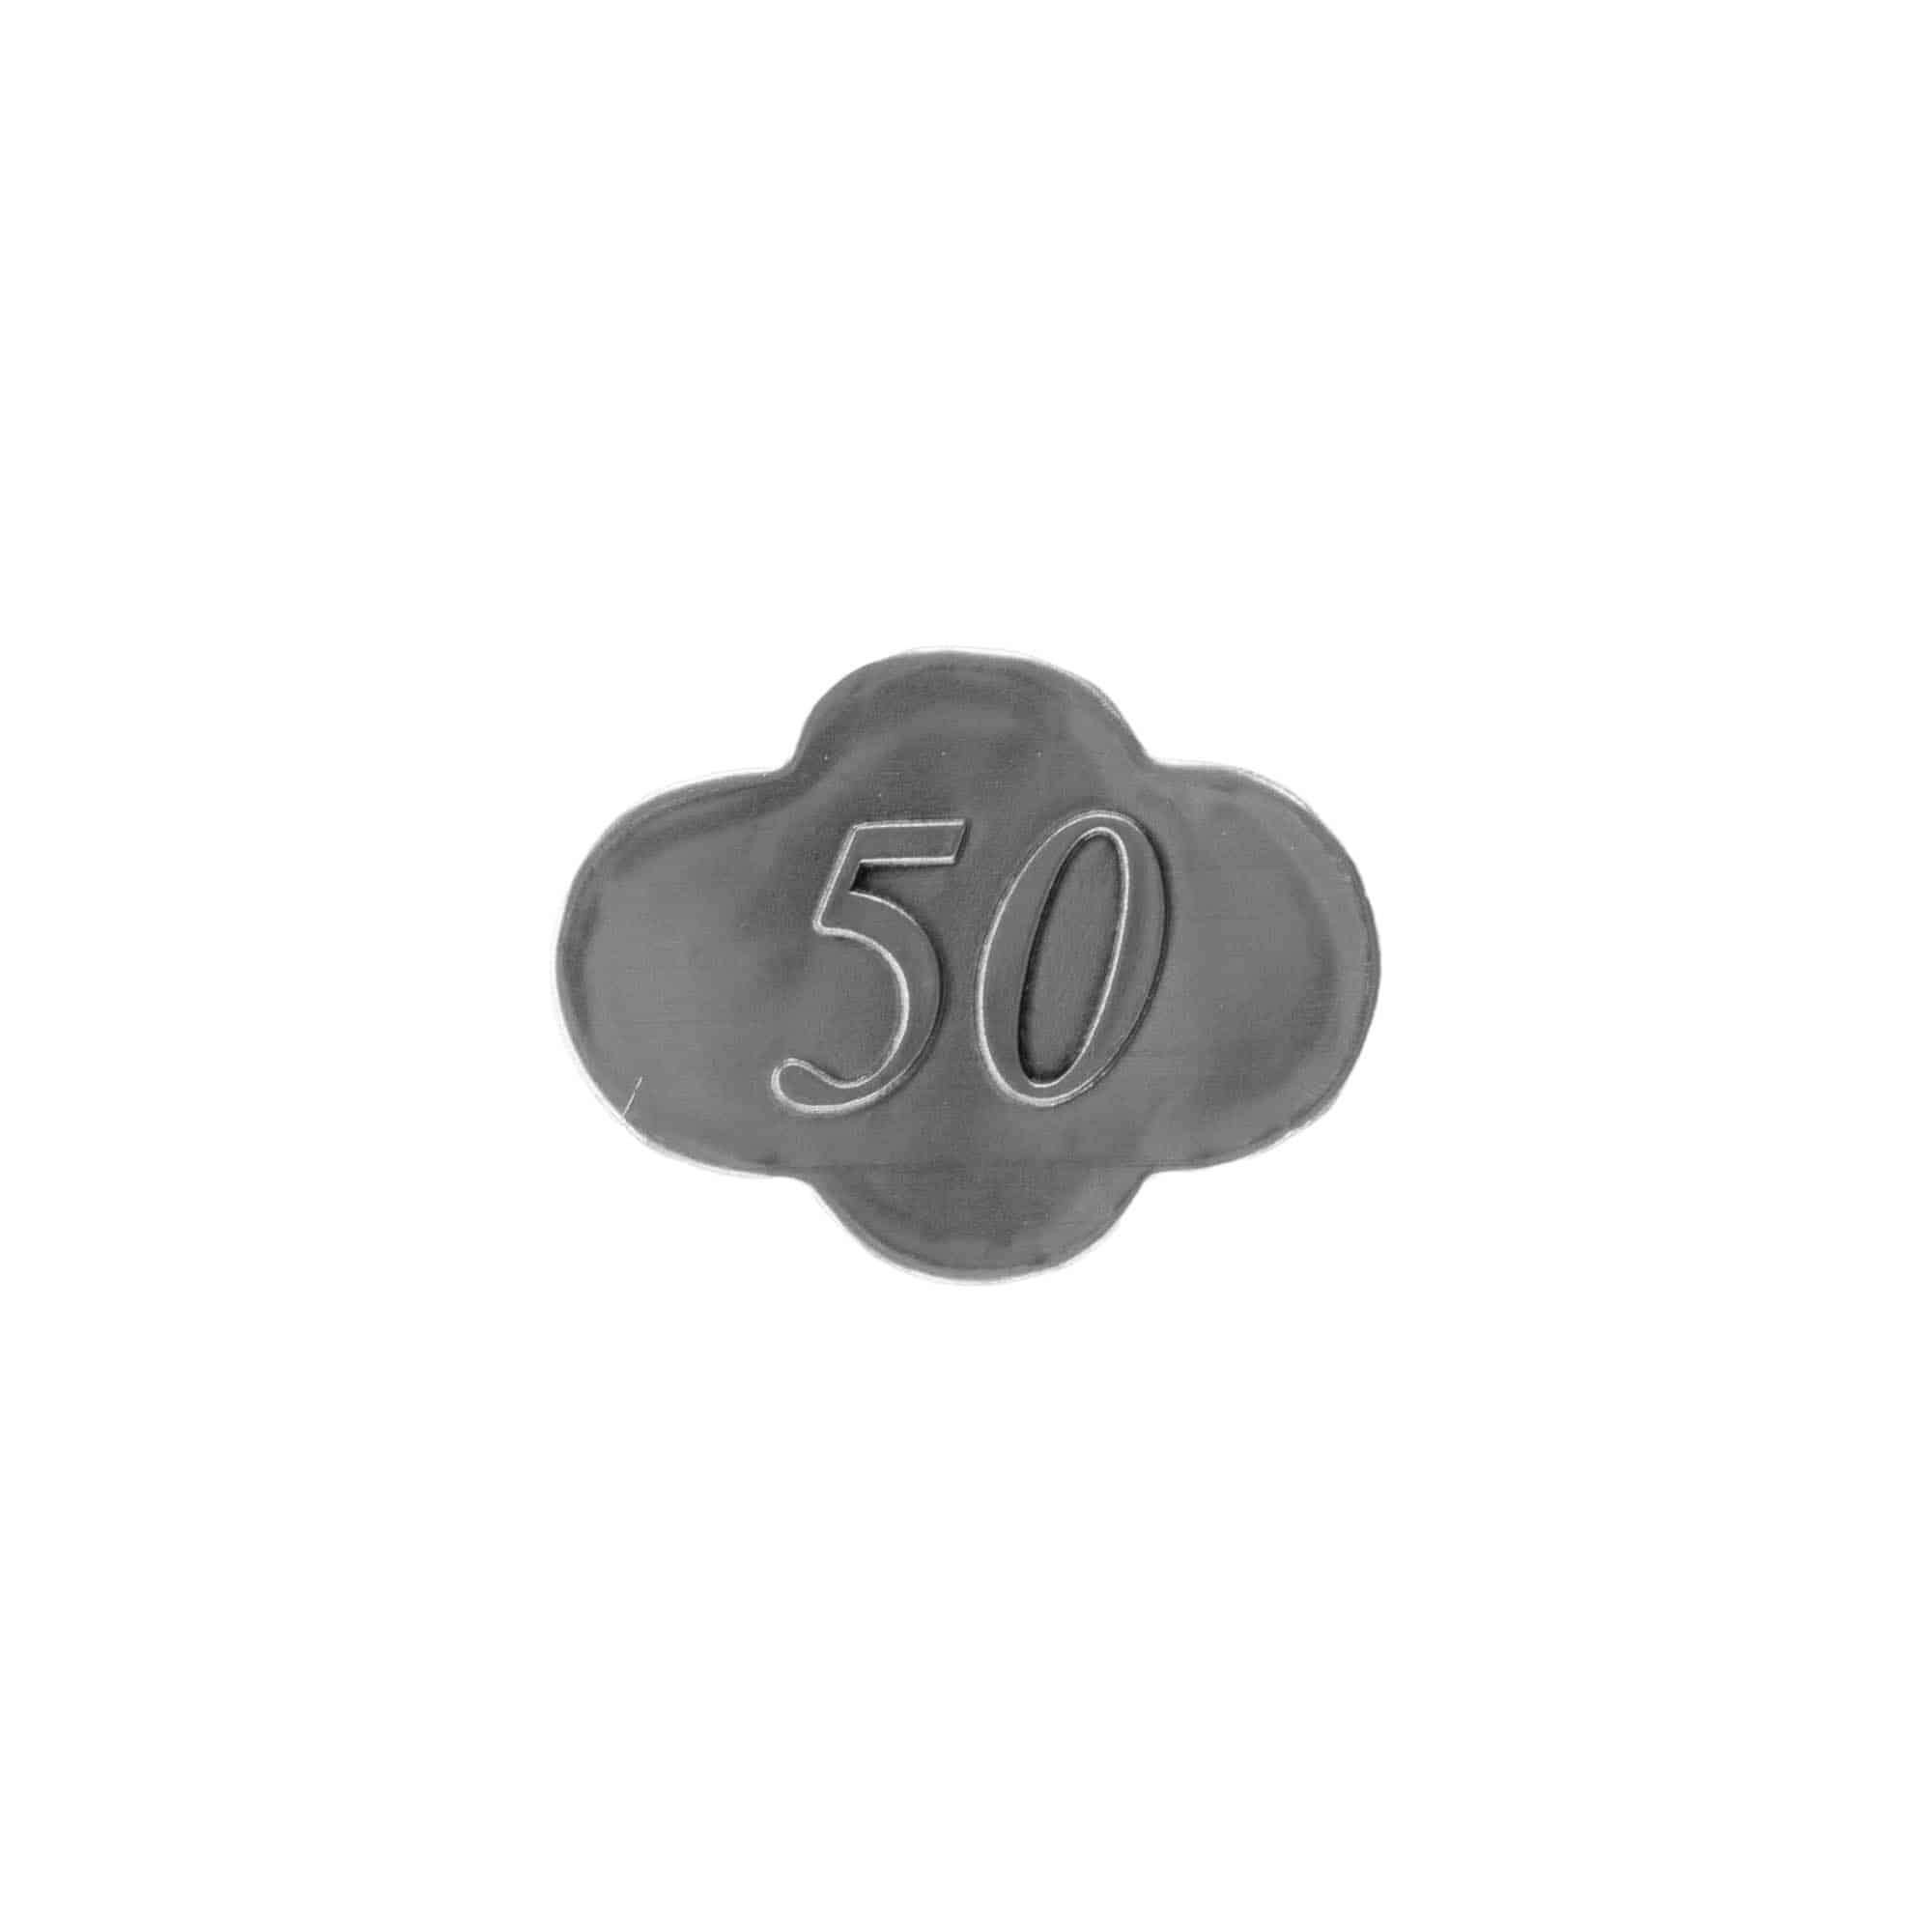 Cínový štítek '50', kov, stříbrný